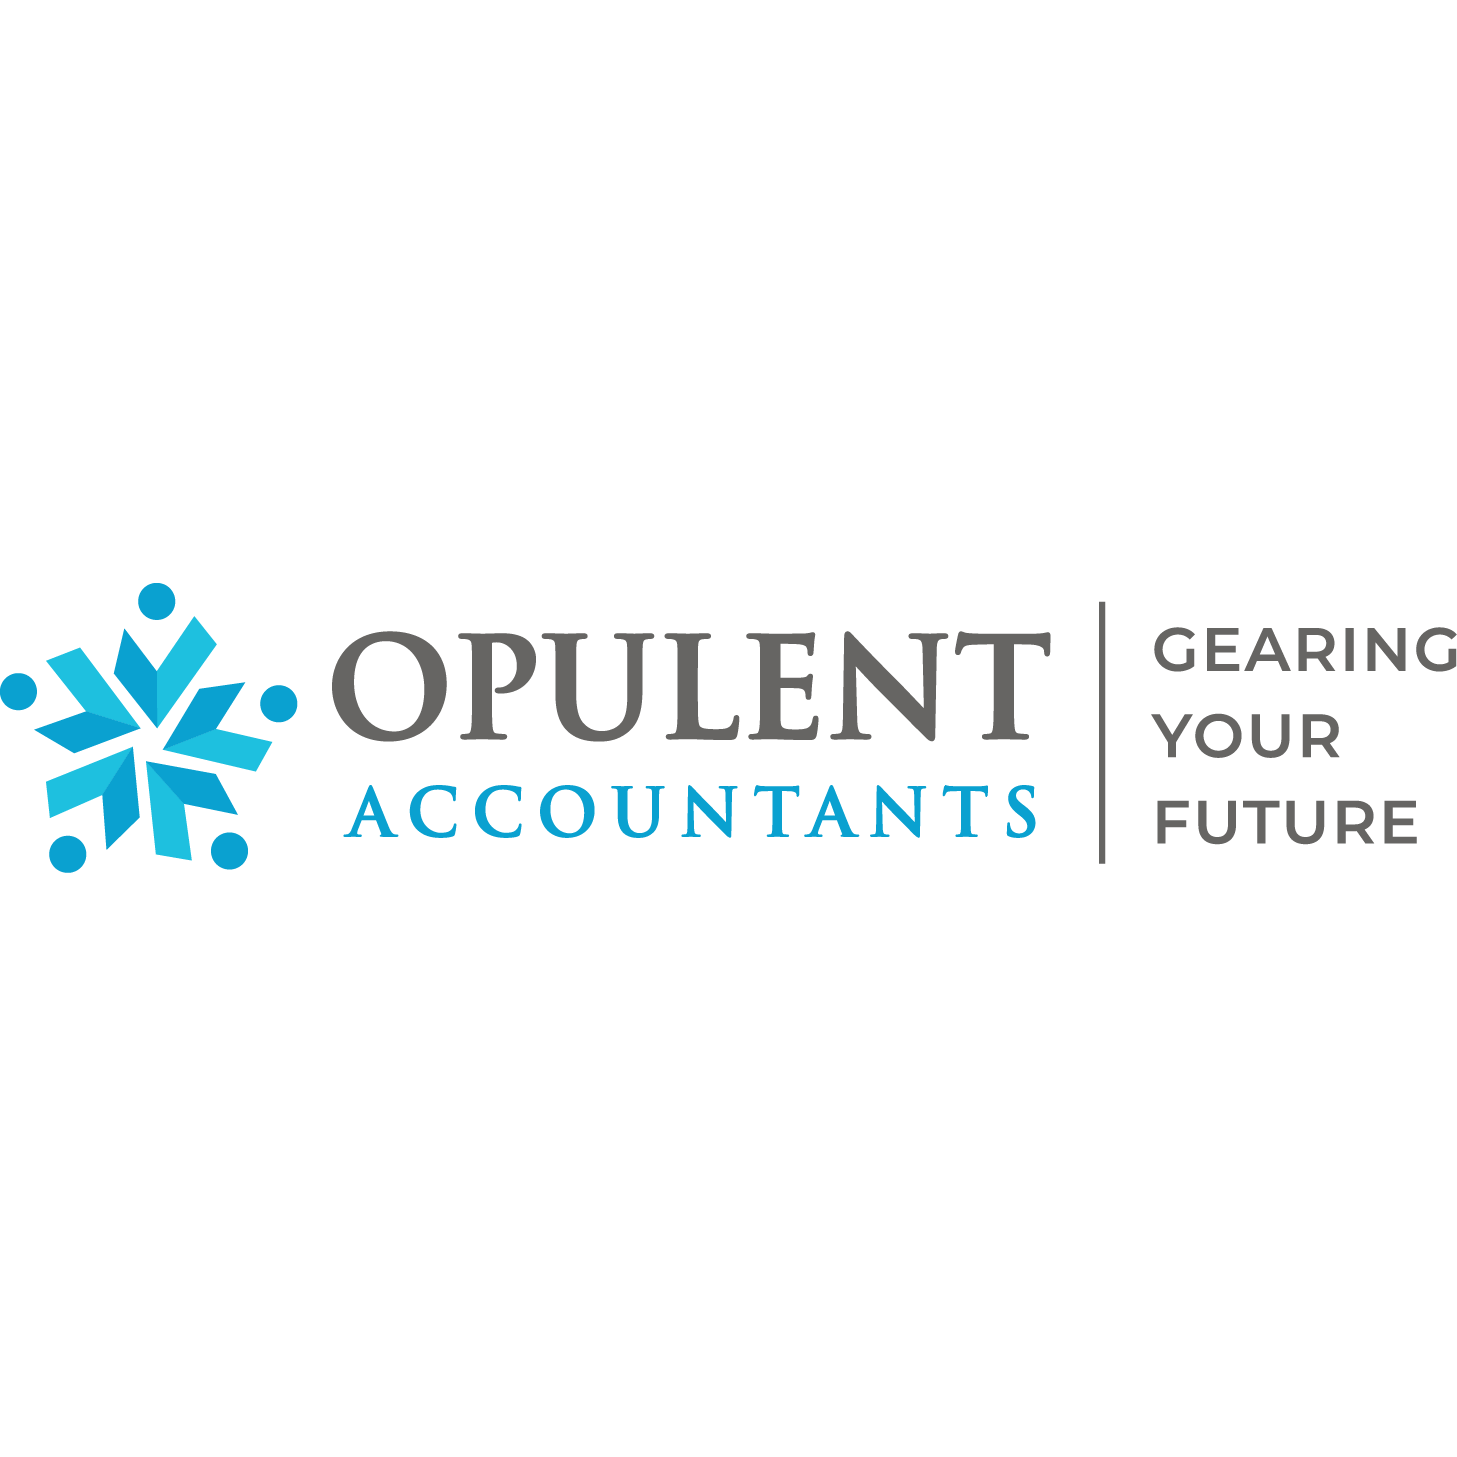 Opulent Accountants - Business Accountants and Tax Agents - Glen Waverley and Mount Waverley Mount Waverley (03) 8838 8726